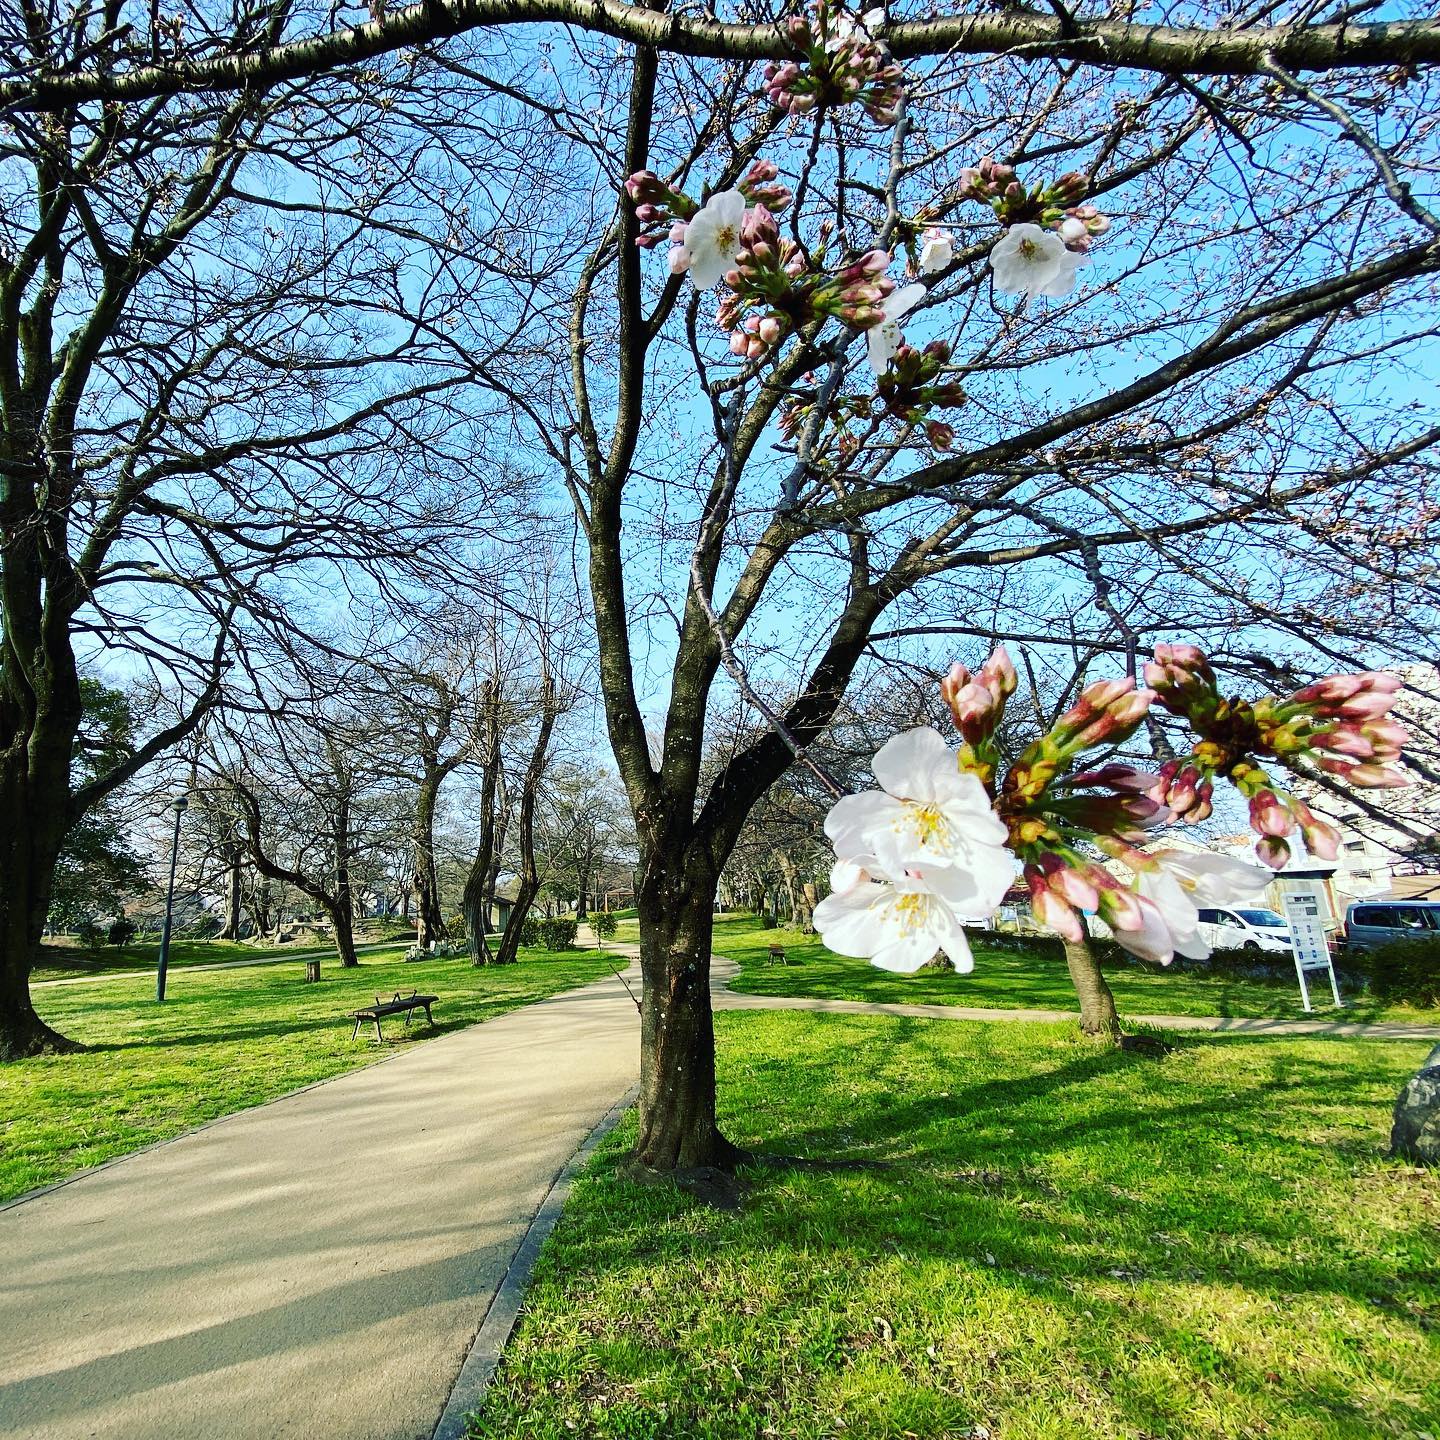 今日（2021/3/19）のサクラ@松山市石手川緑地公園0.5分咲き。ほとんどがまだつぼみ。早めに咲く樹からチラホラ咲き始めた様子。